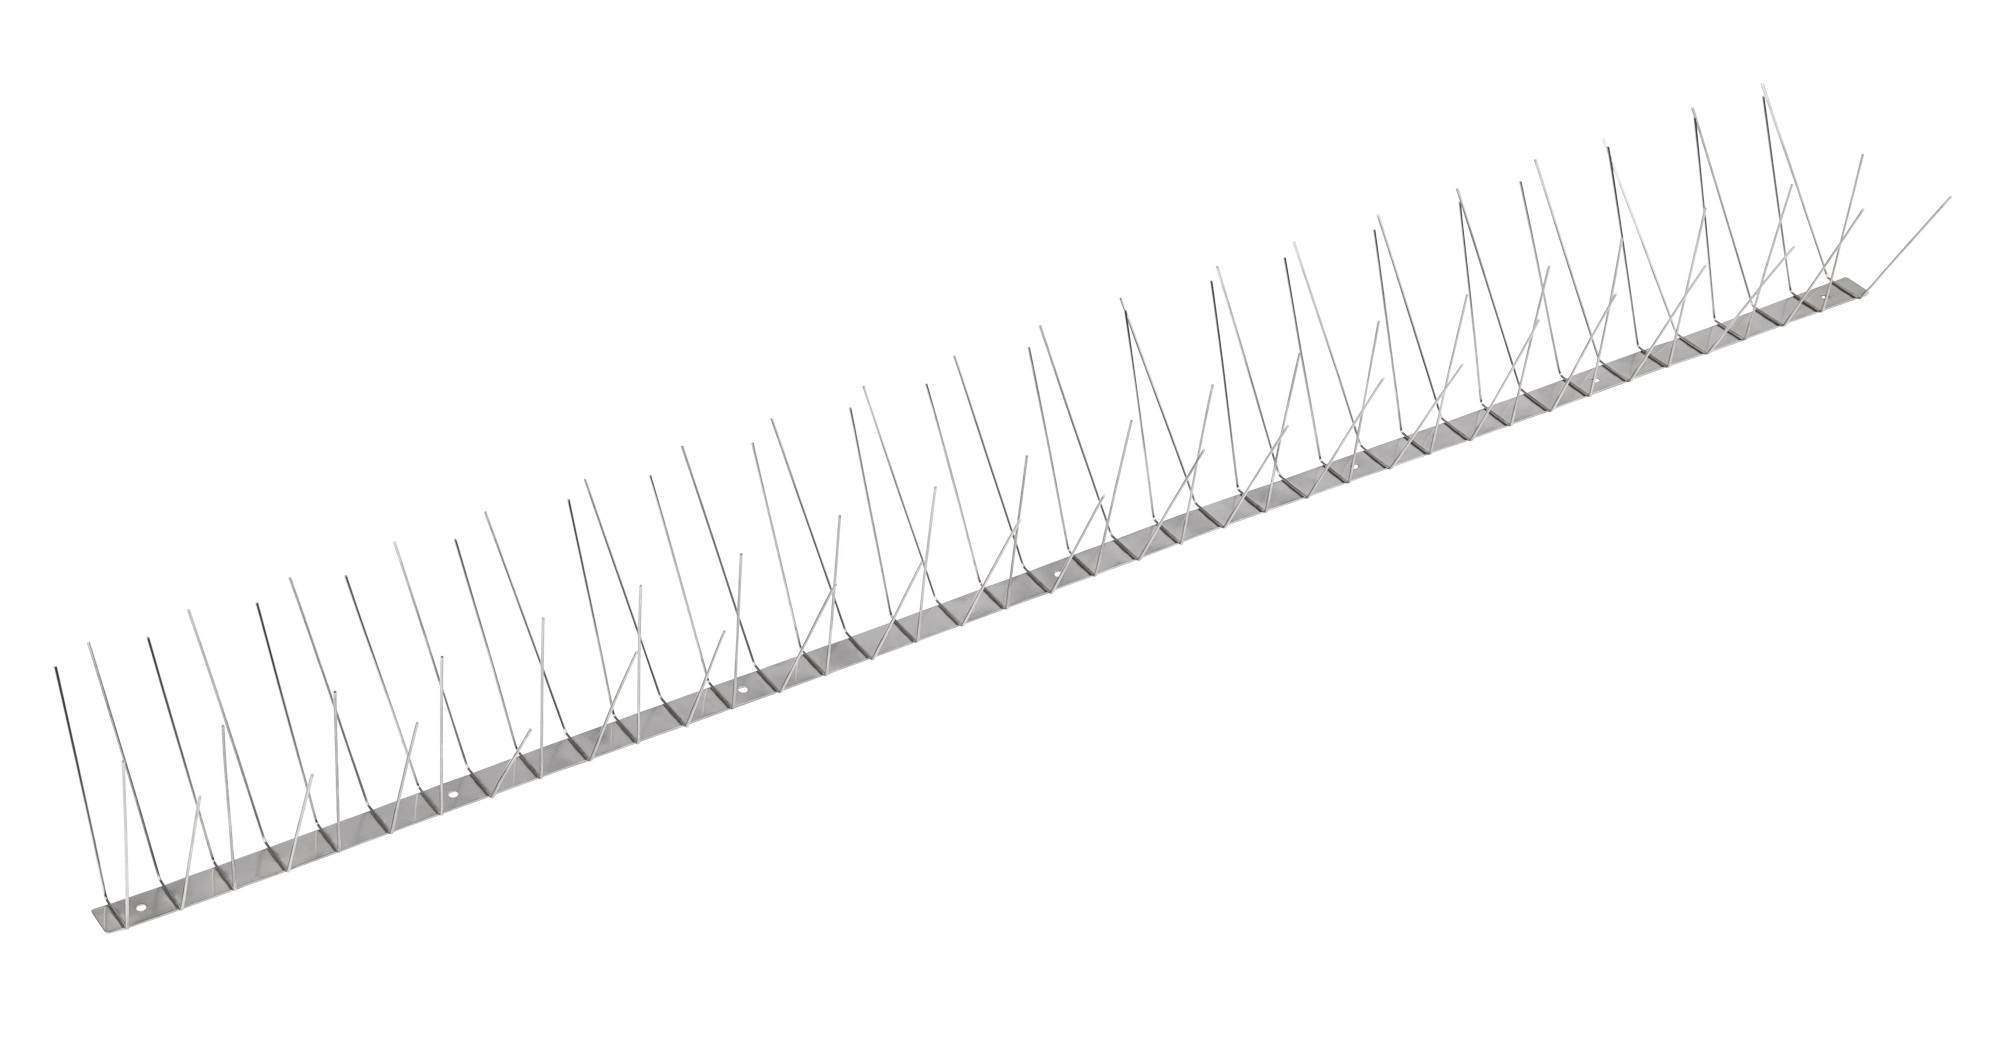 4 reihige Taubenabwehr-Spikes 1 m lang aus Edelstahl